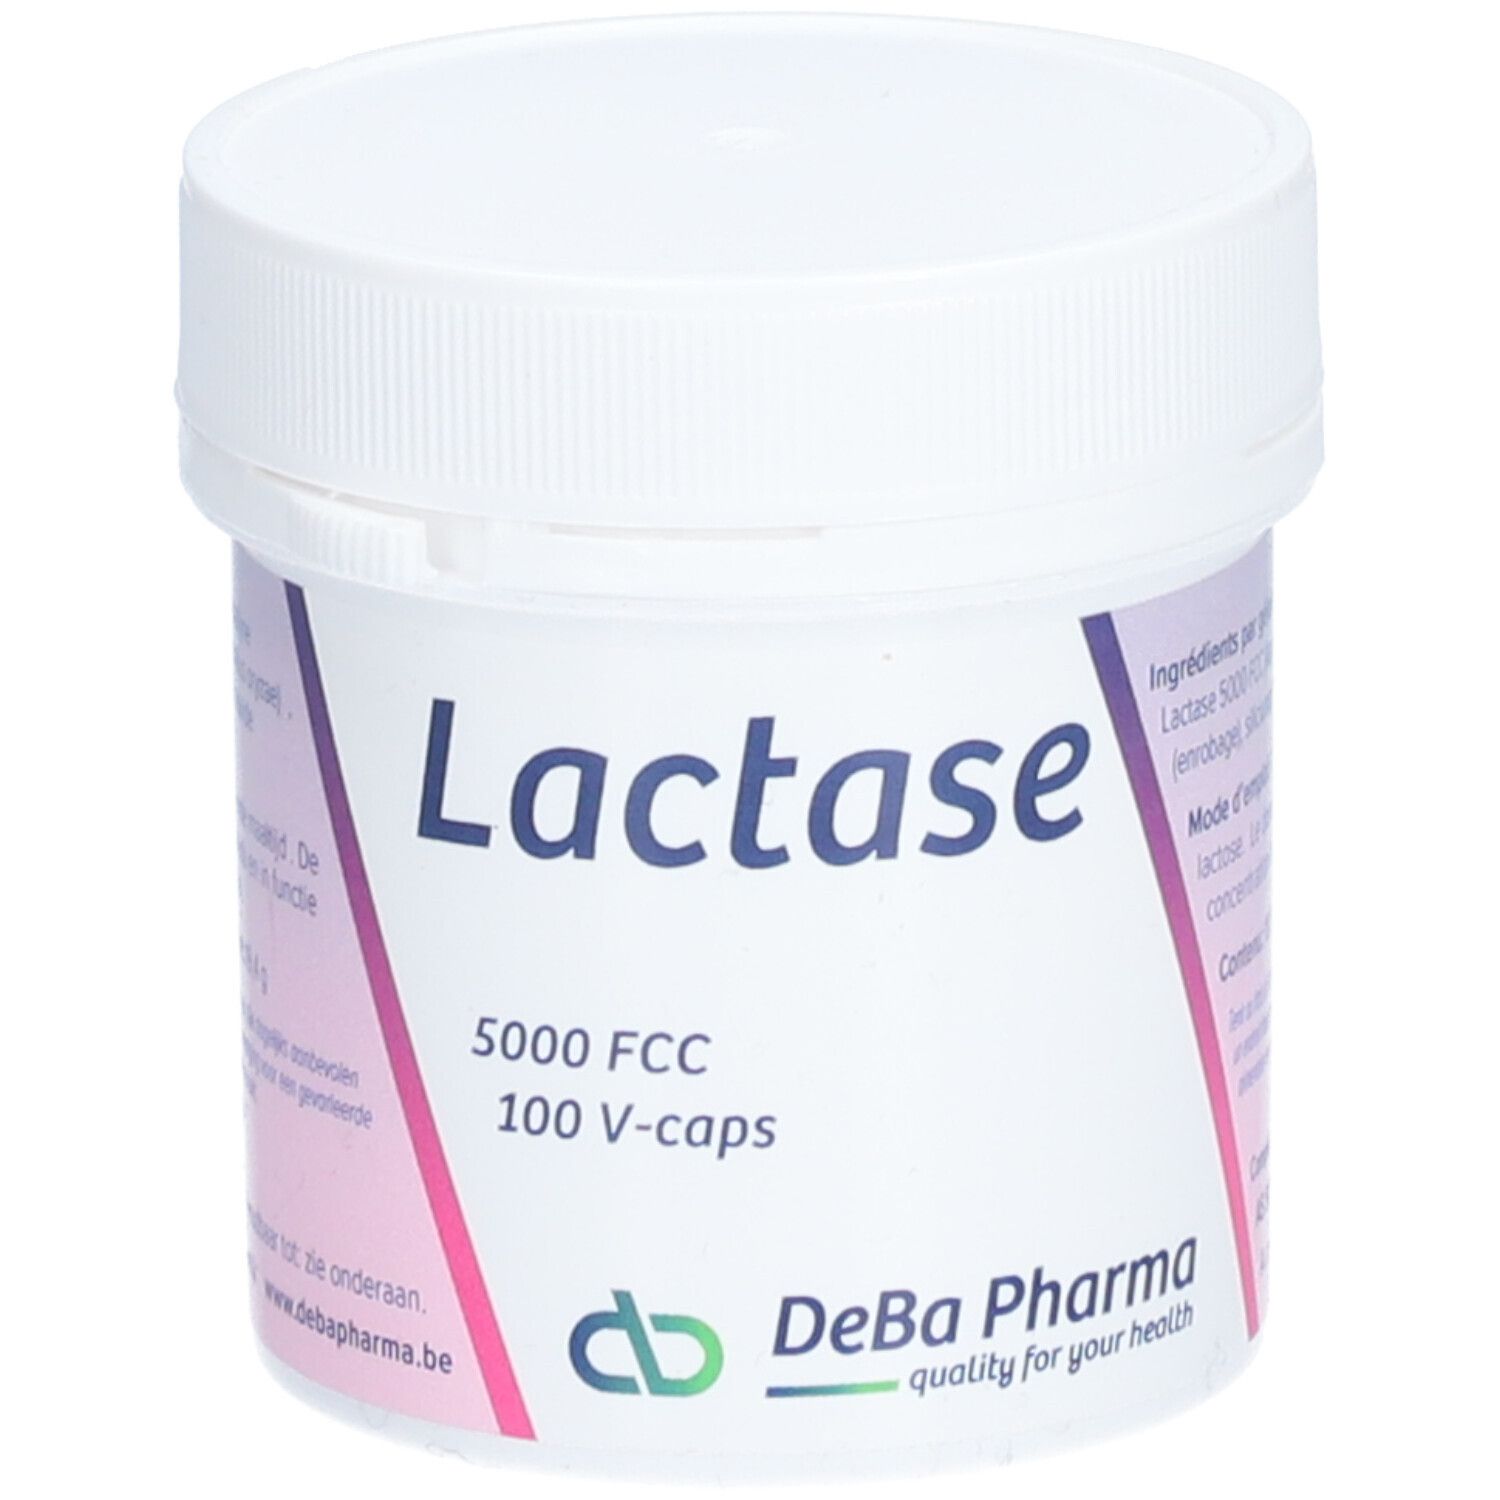 DeBa Pharma Lactase 5000 FCC